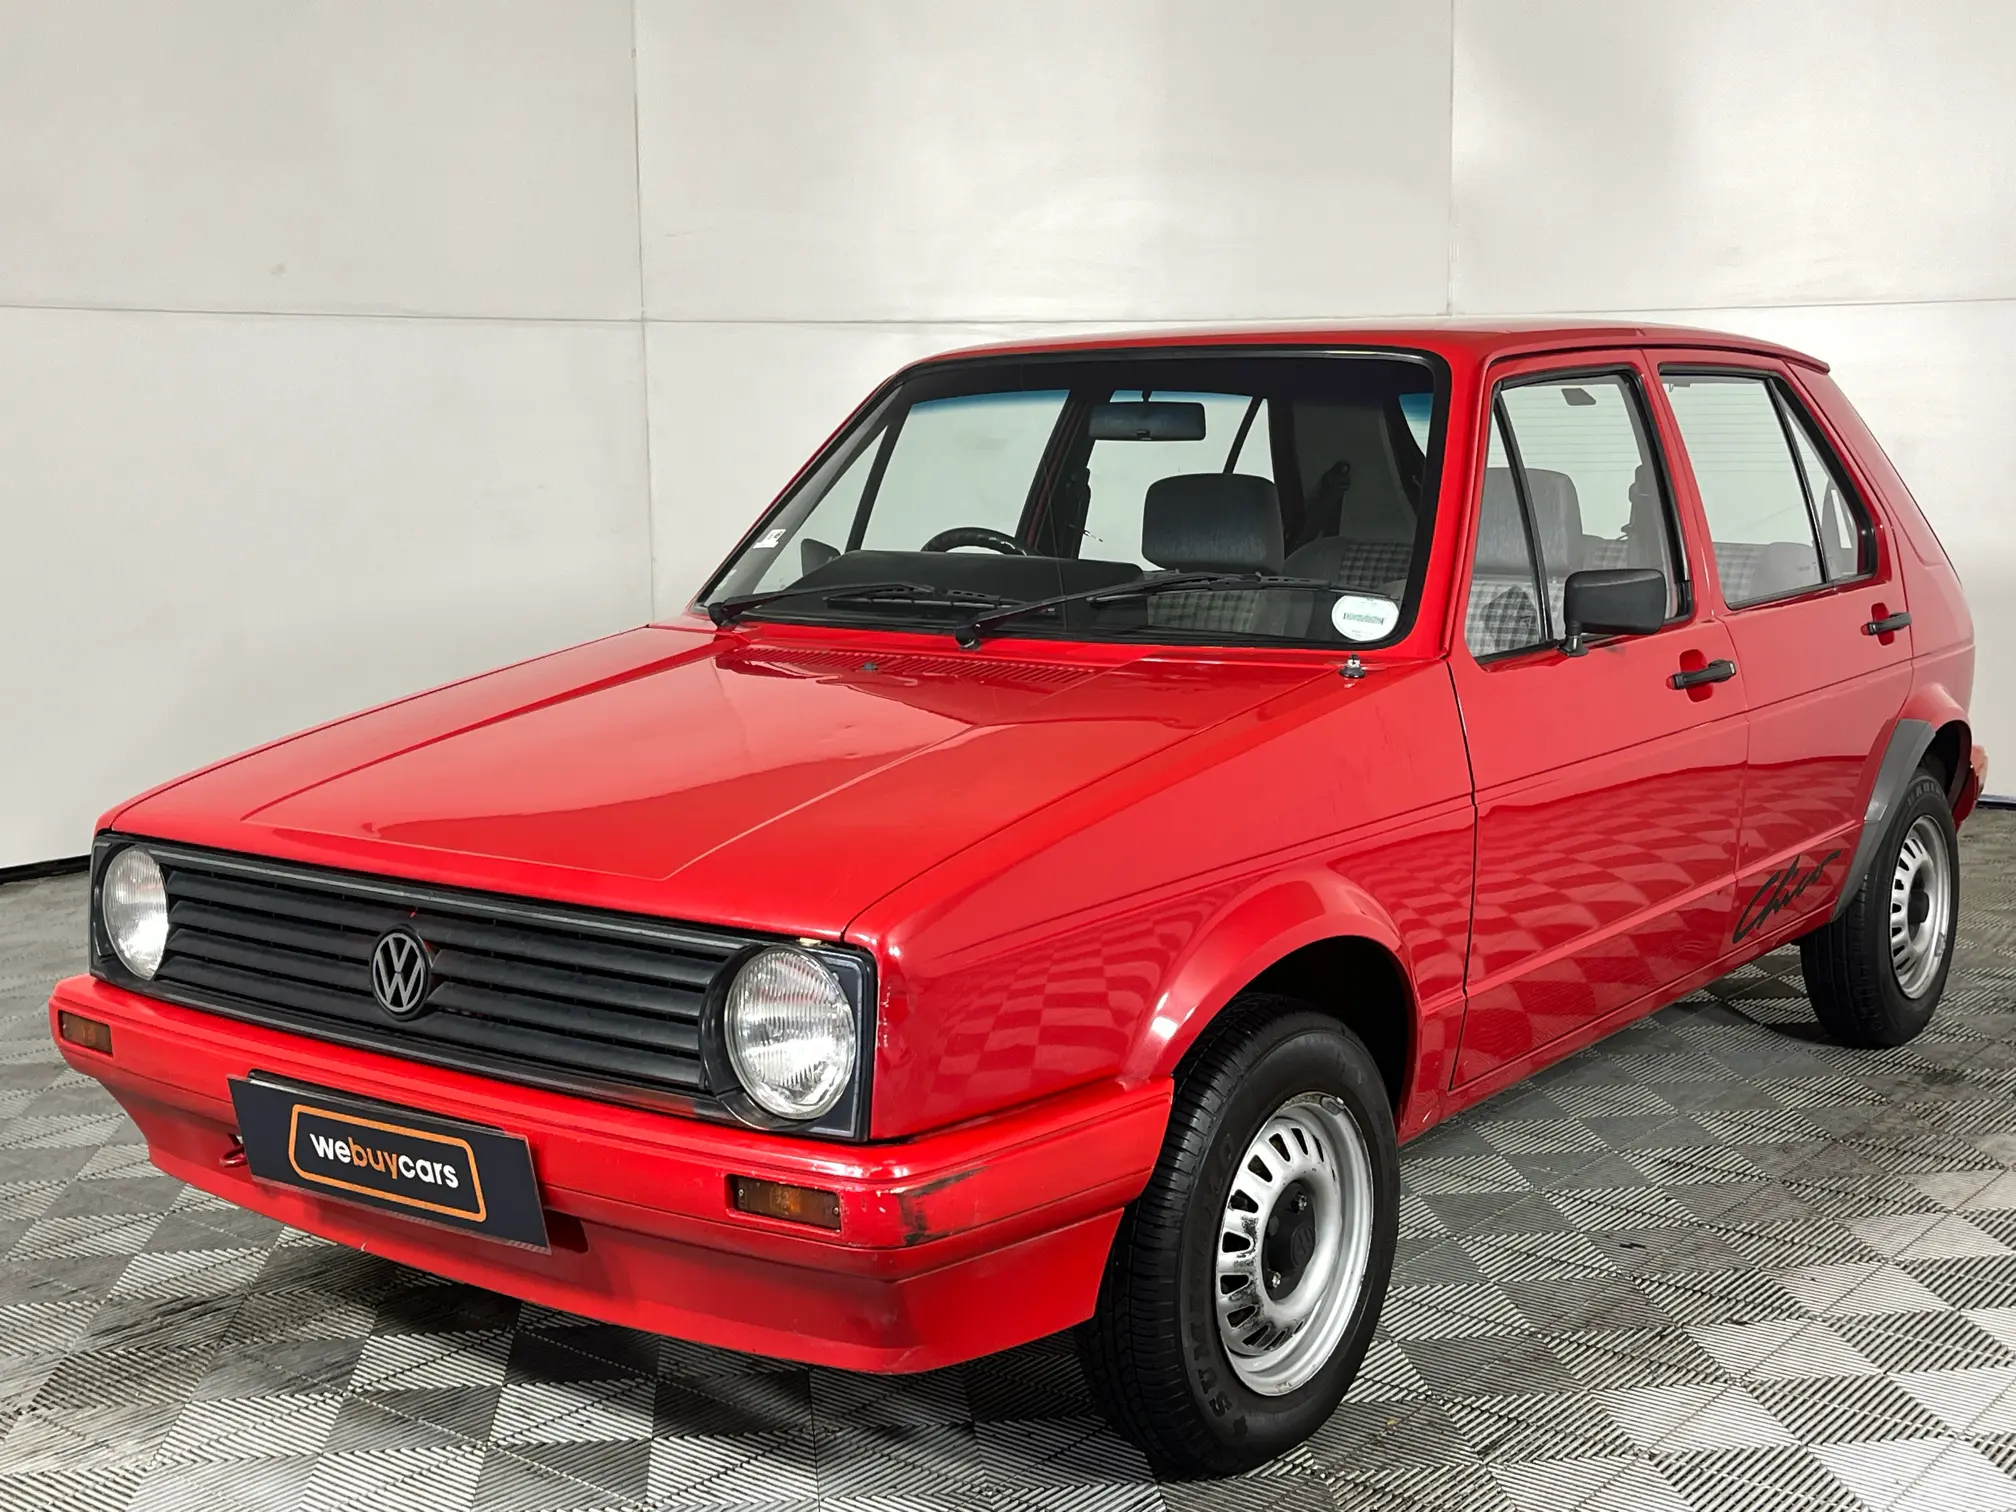 1995 Volkswagen Citi Chico 1.3